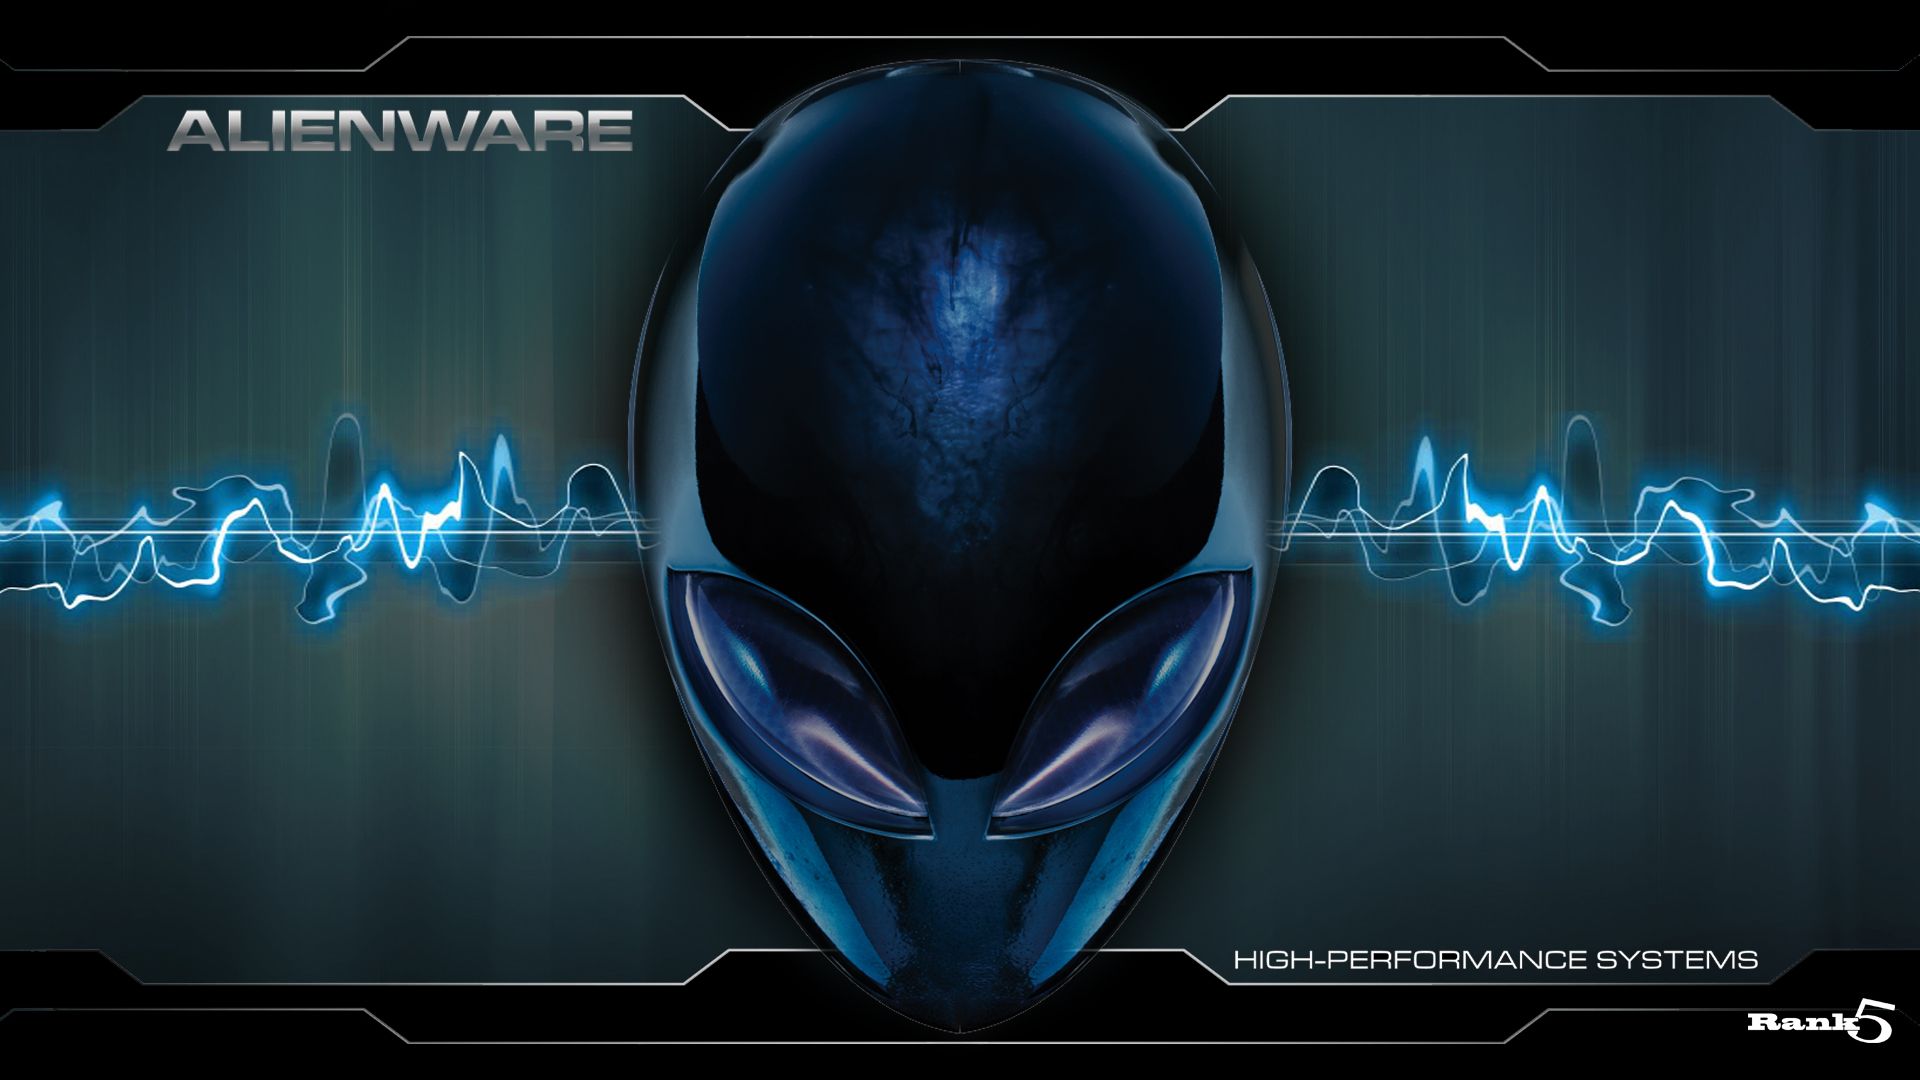 Alienware 4K  Logo Wallpapers